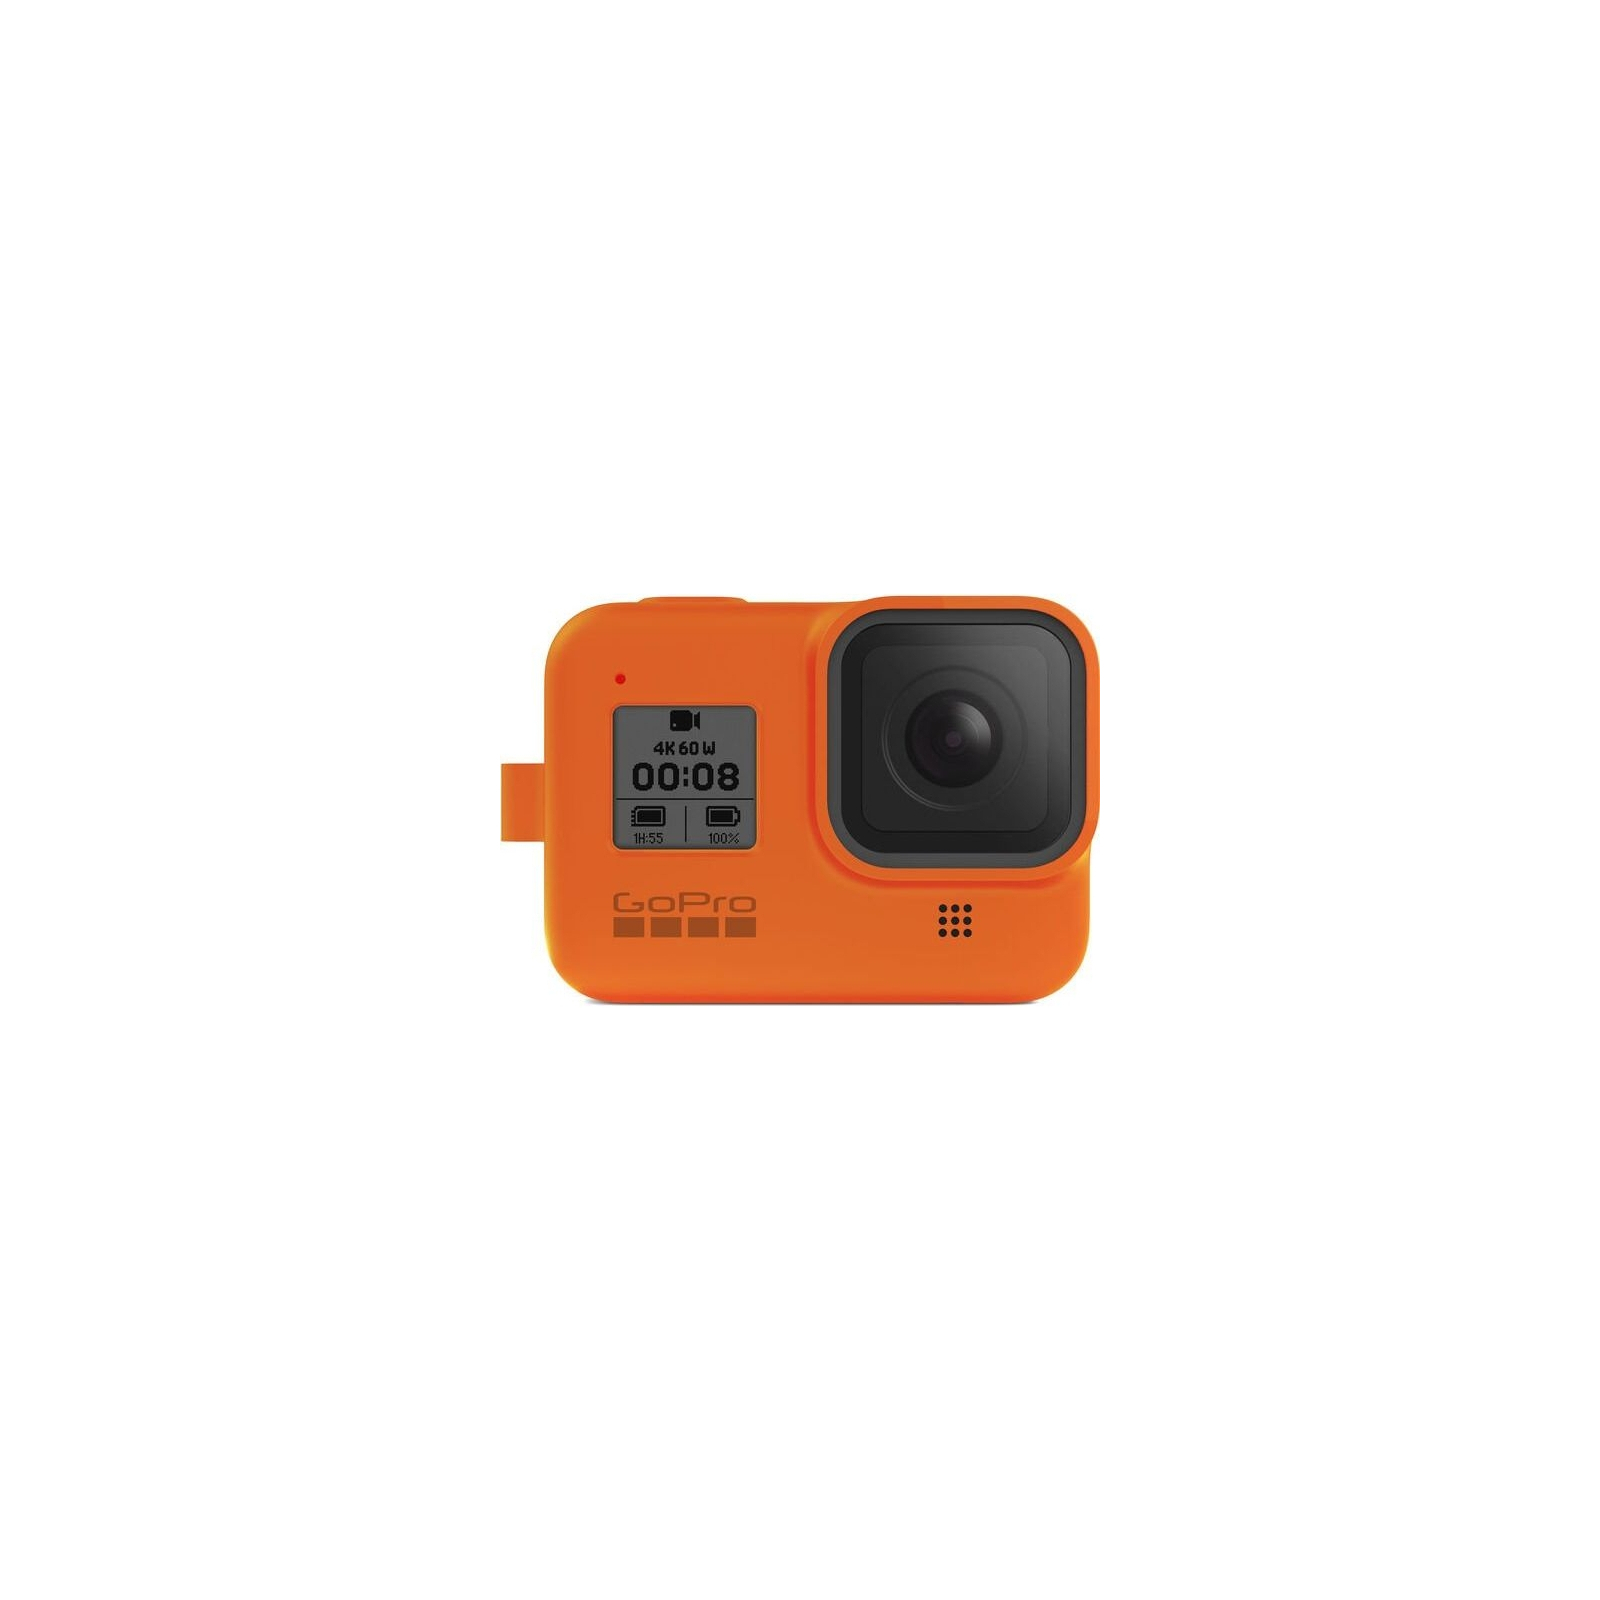 Аксесуар до екшн-камер GoPro Sleeve&Lanyard Orange для HERO8 (AJSST-004) зображення 5